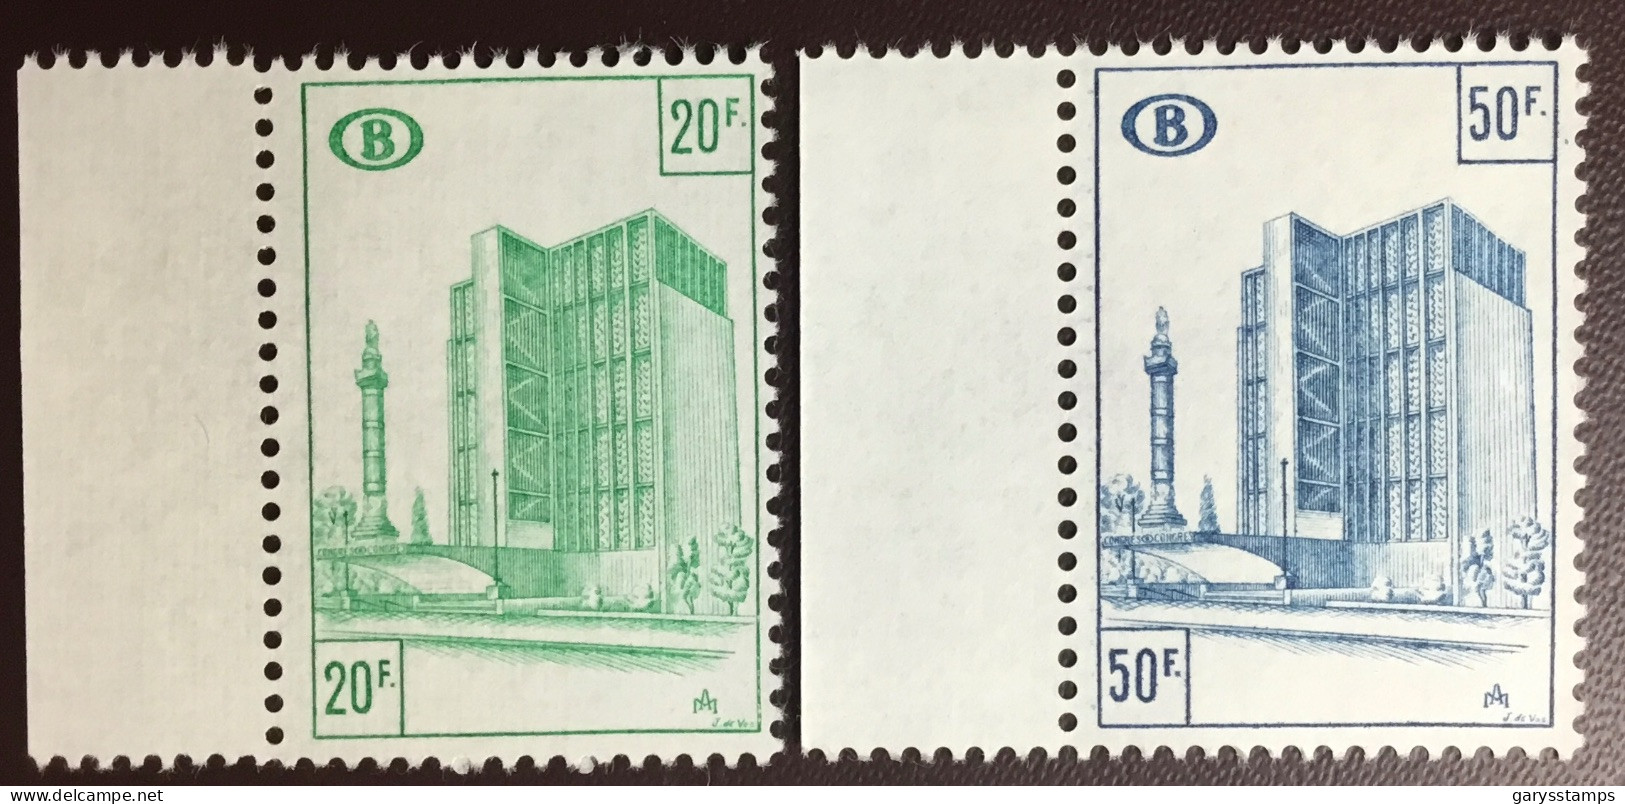 Belgium 1975 Railway Stamps Set MNH - Mint